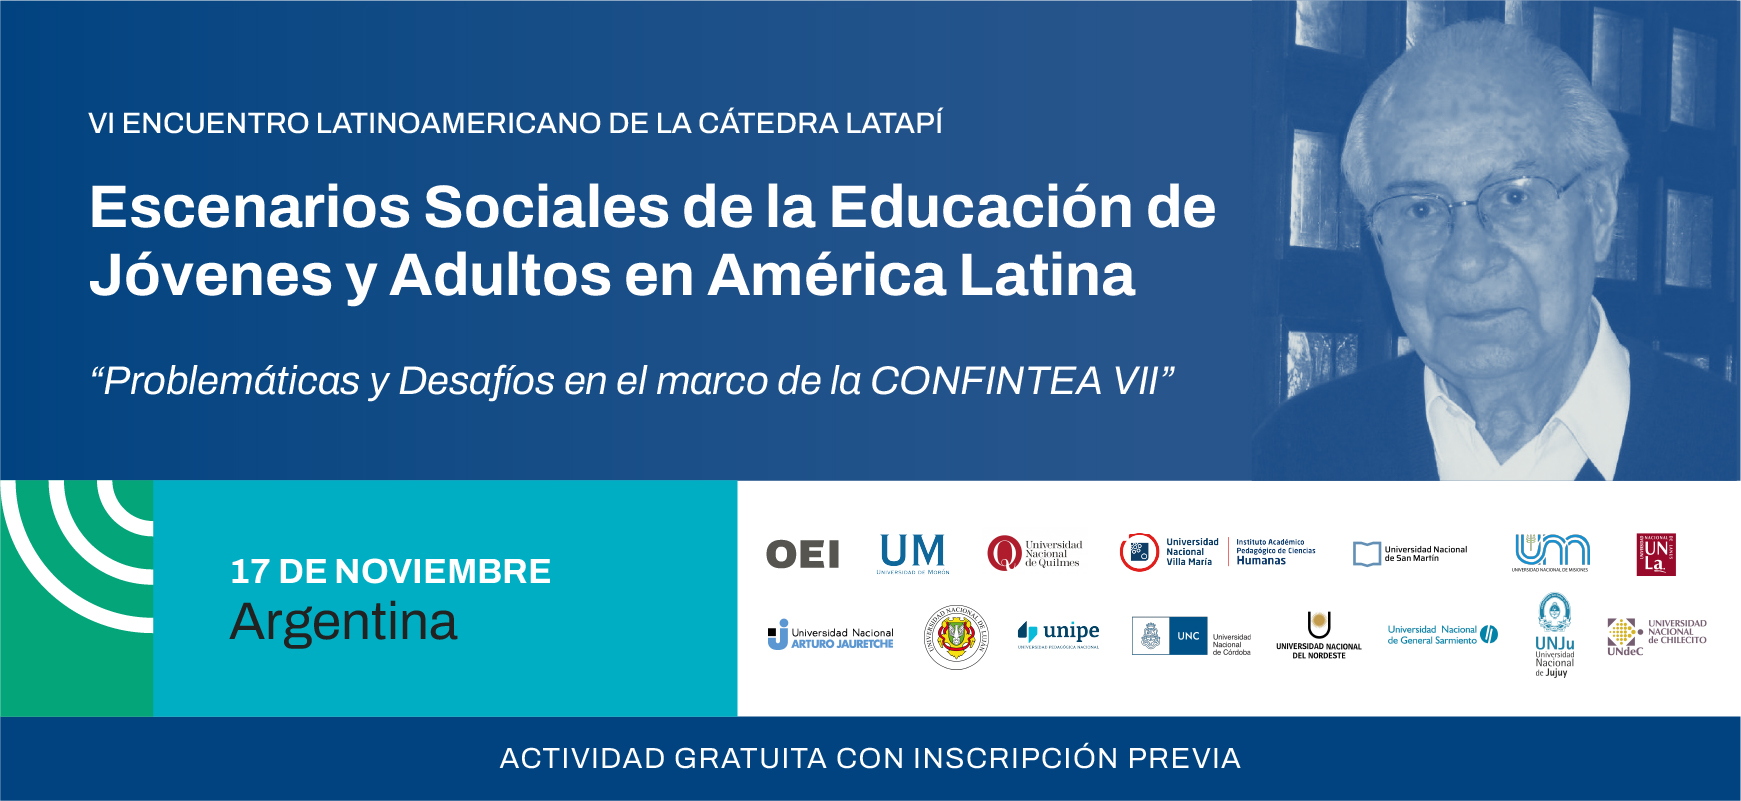 VI Encuentro Latinoamericano. Escenarios Sociales de la Educación de Jóvenes y Adultos en América Latina: "Problemáticas y Desafíos en el marco de la CONFINTEA VII”  